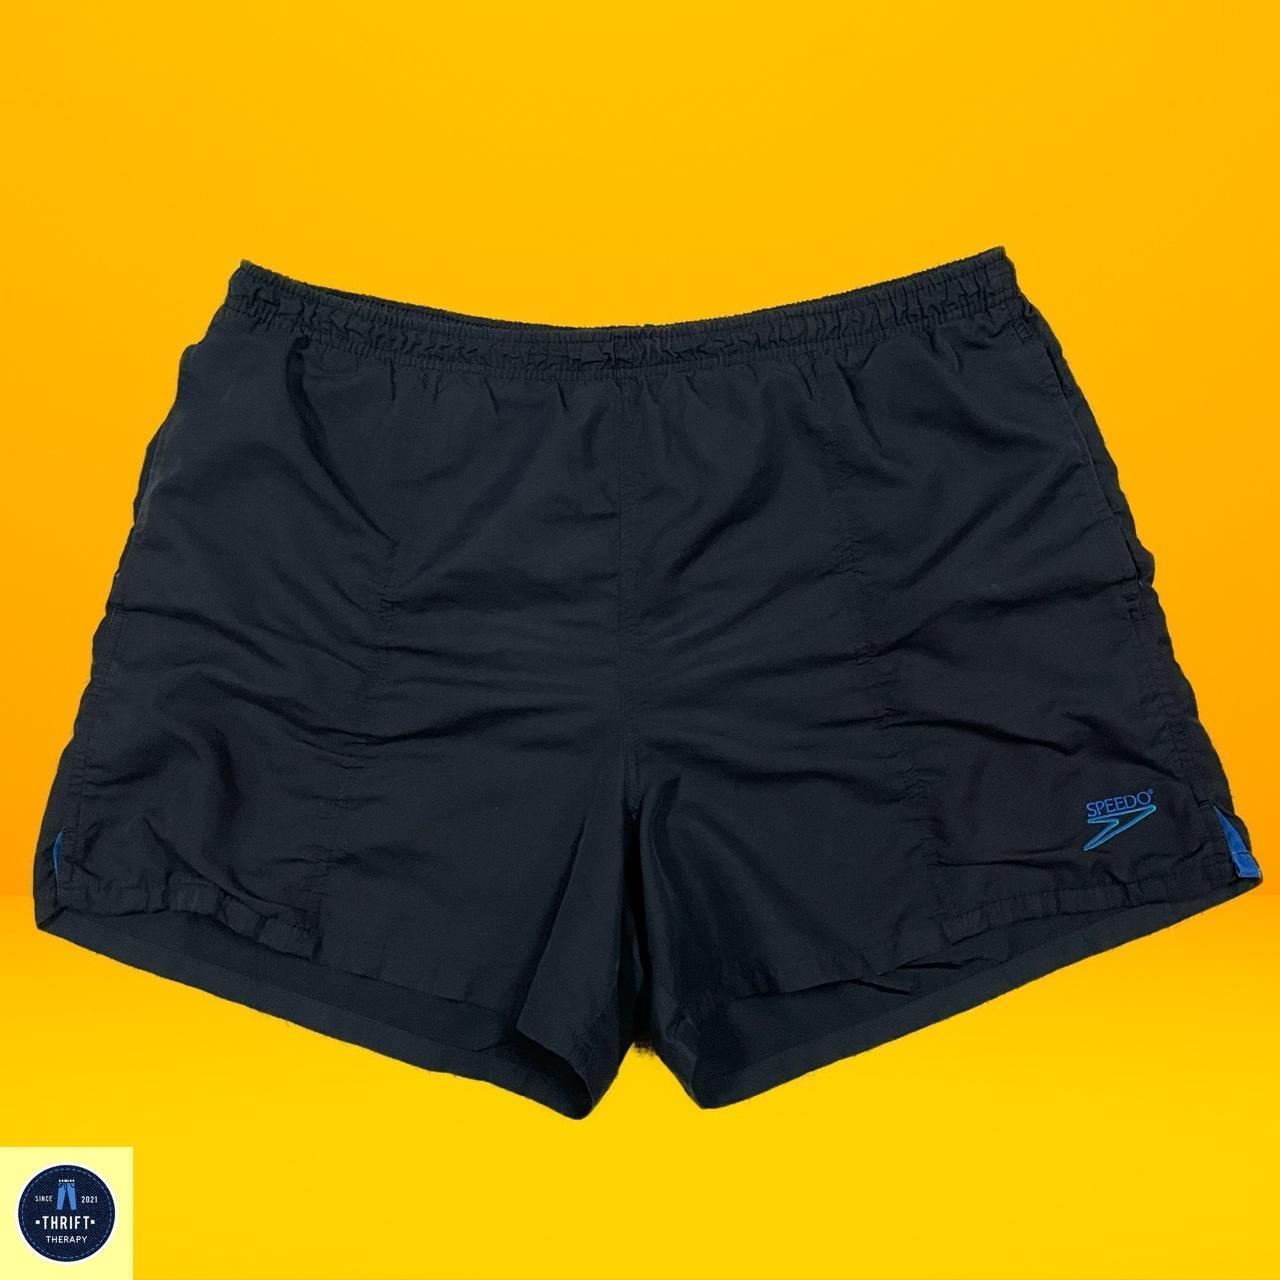 Speedo Men's Shorts | Depop